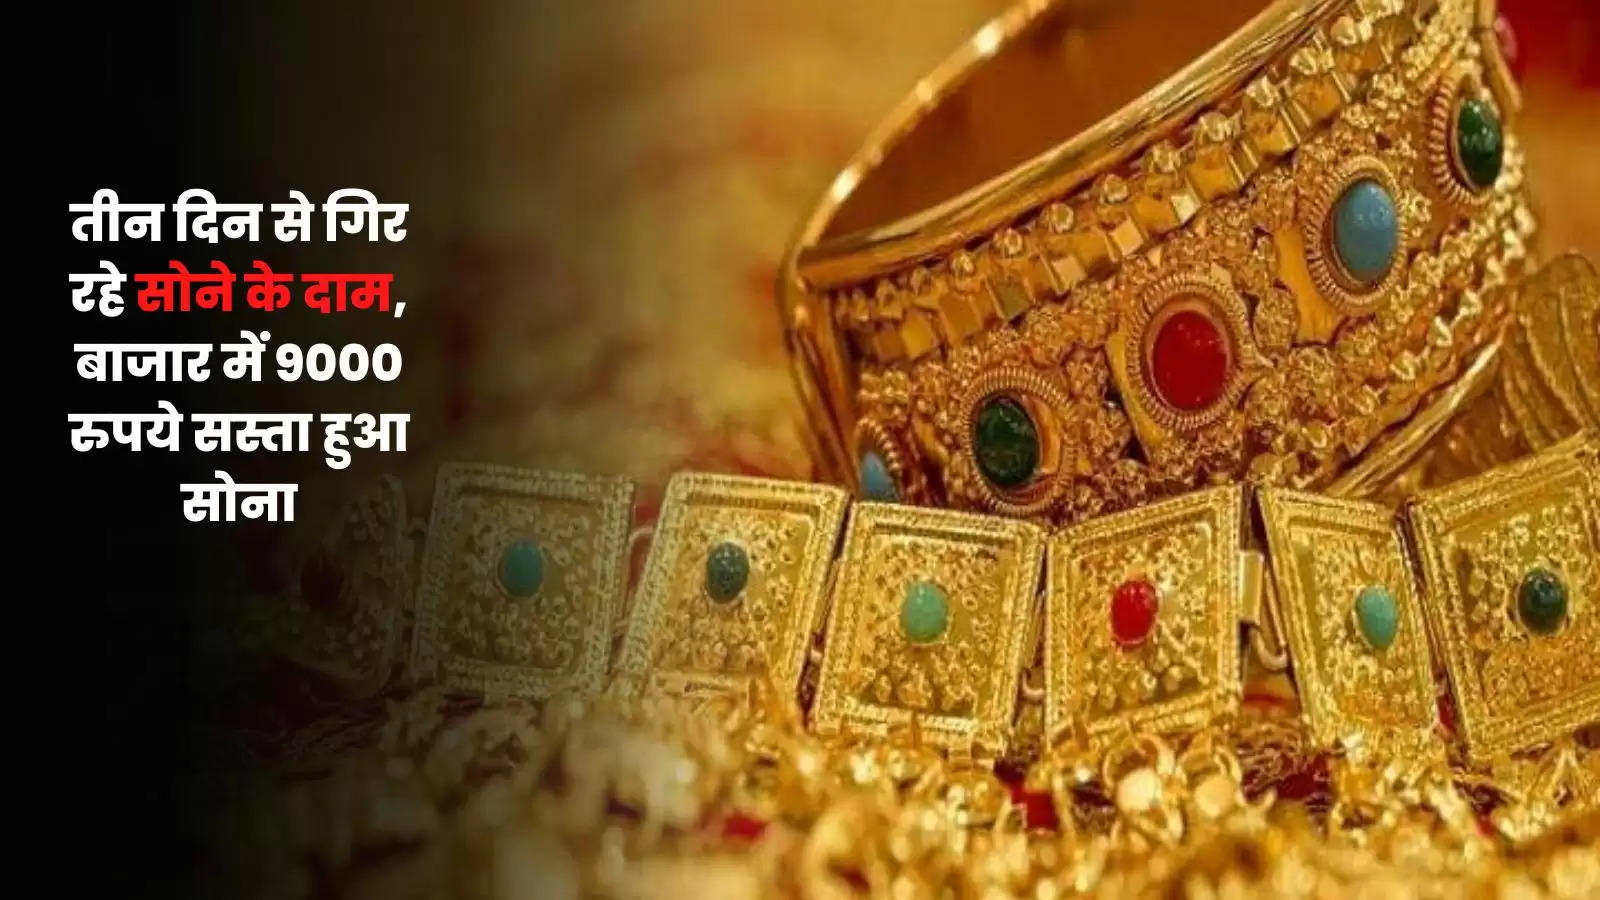 तीन दिन से गिर रहे सोने के दाम, बाजार में 9000 रुपये सस्ता हुआ सोना